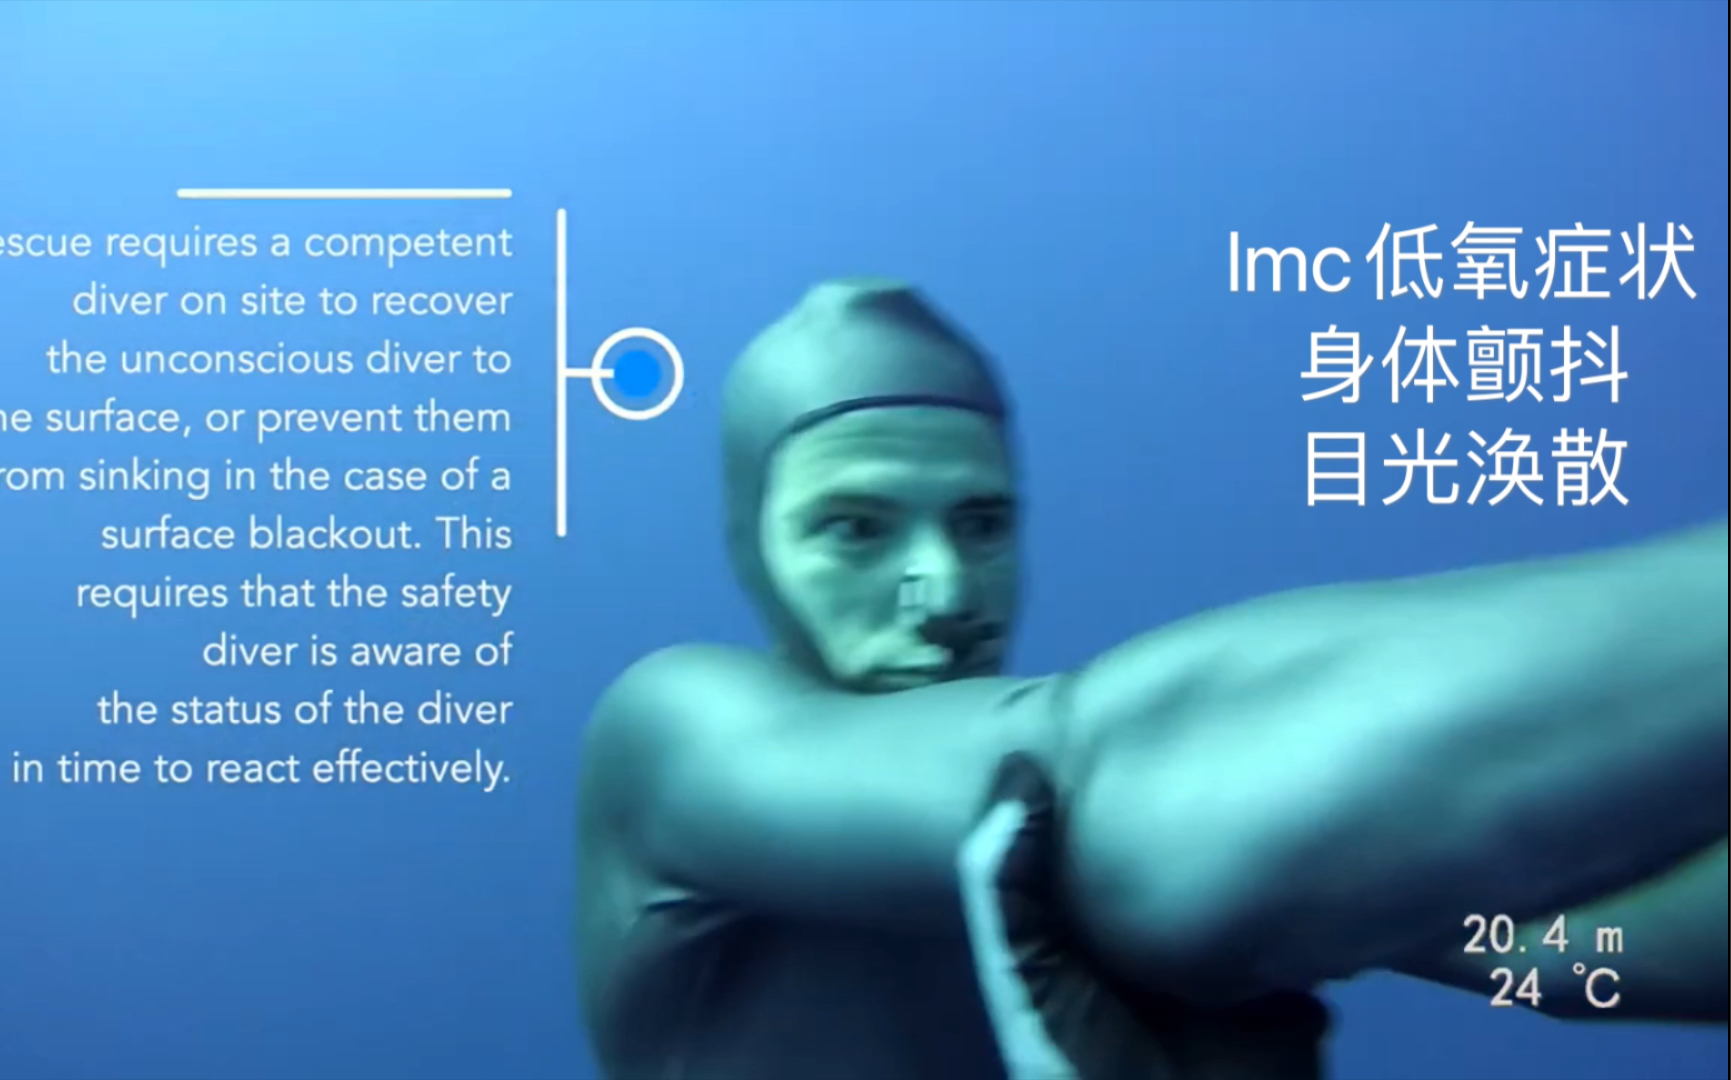 101米自由潜深潜真实BO昏迷案例，安全员在潜水员出现lmc颤抖情况时进行了救援